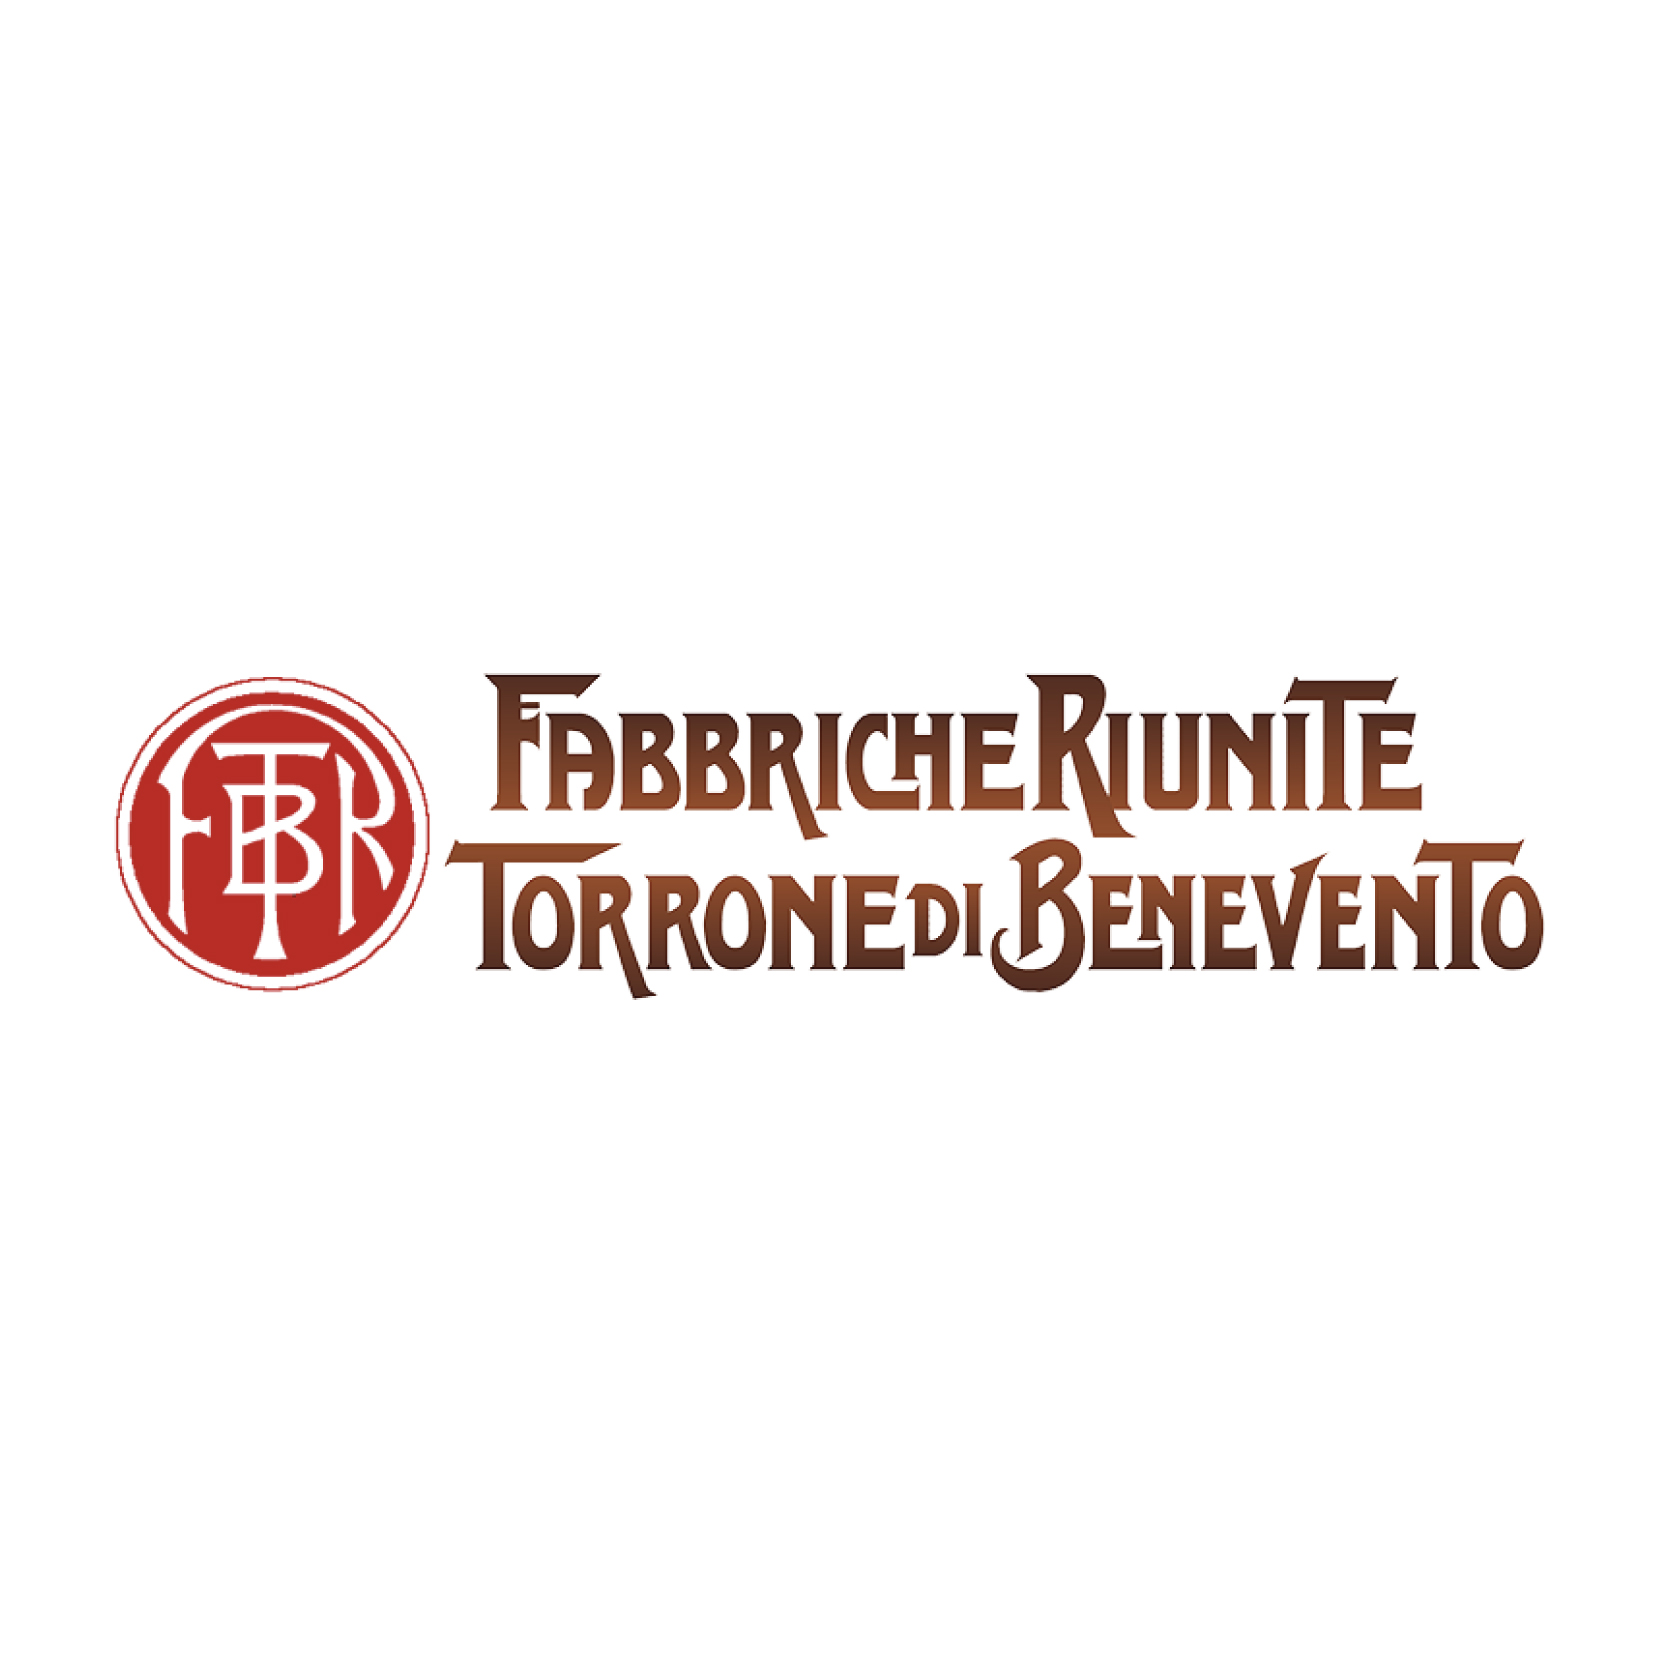 Fabbriche Riunite Torrone di Benevento